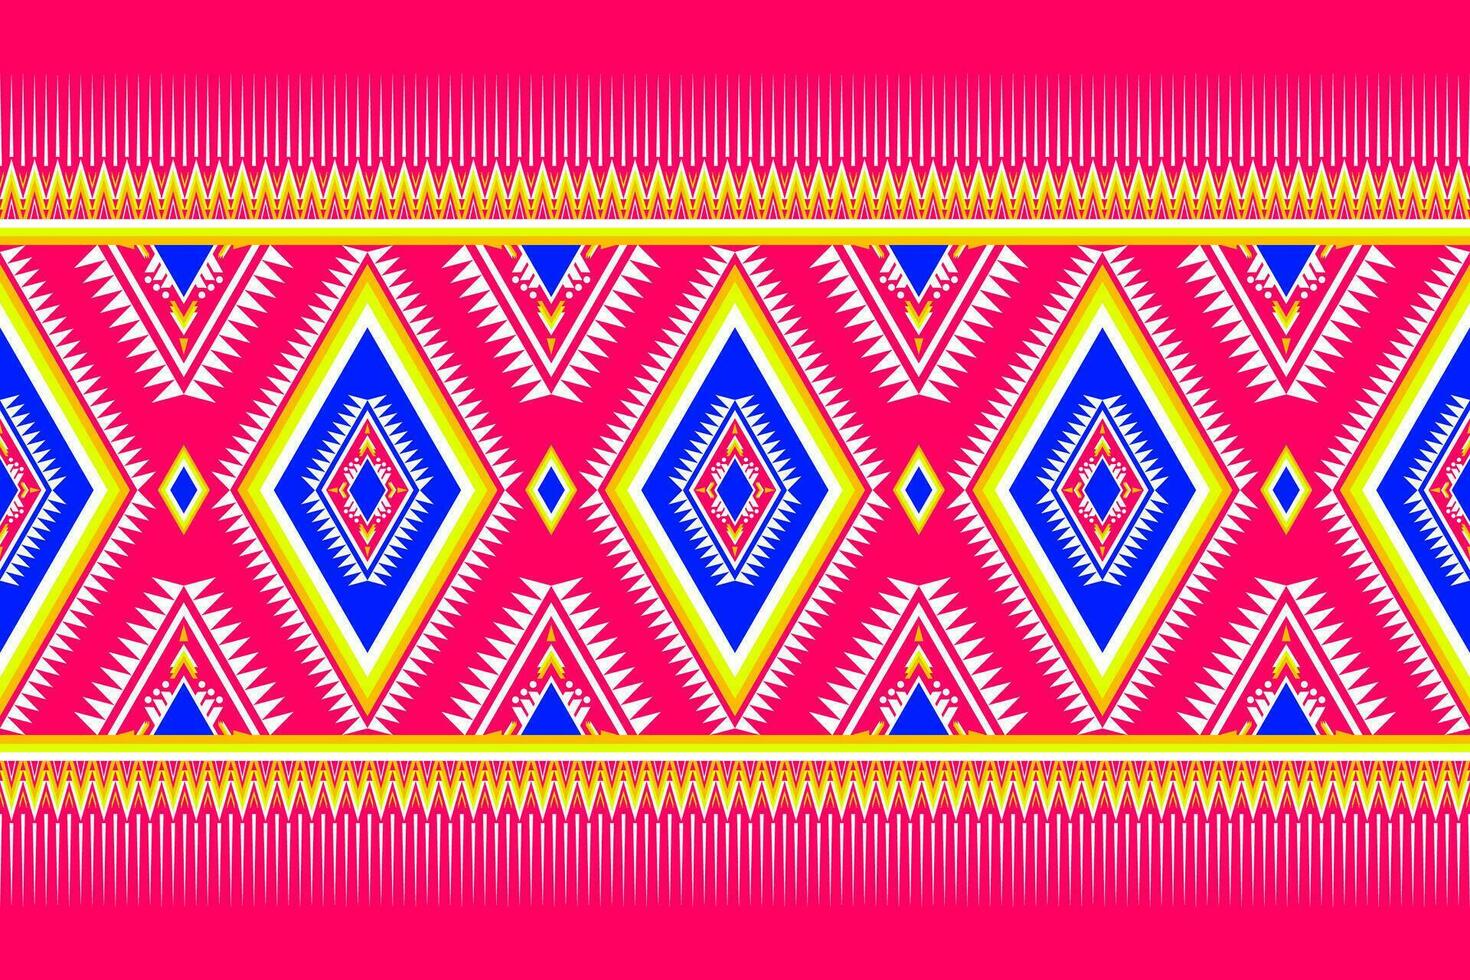 geométrico étnico padronizar tradicional Projeto para fundo, tapete, papel de parede, roupas, invólucro, batik, tecido, vetor ilustração bordado estilo.